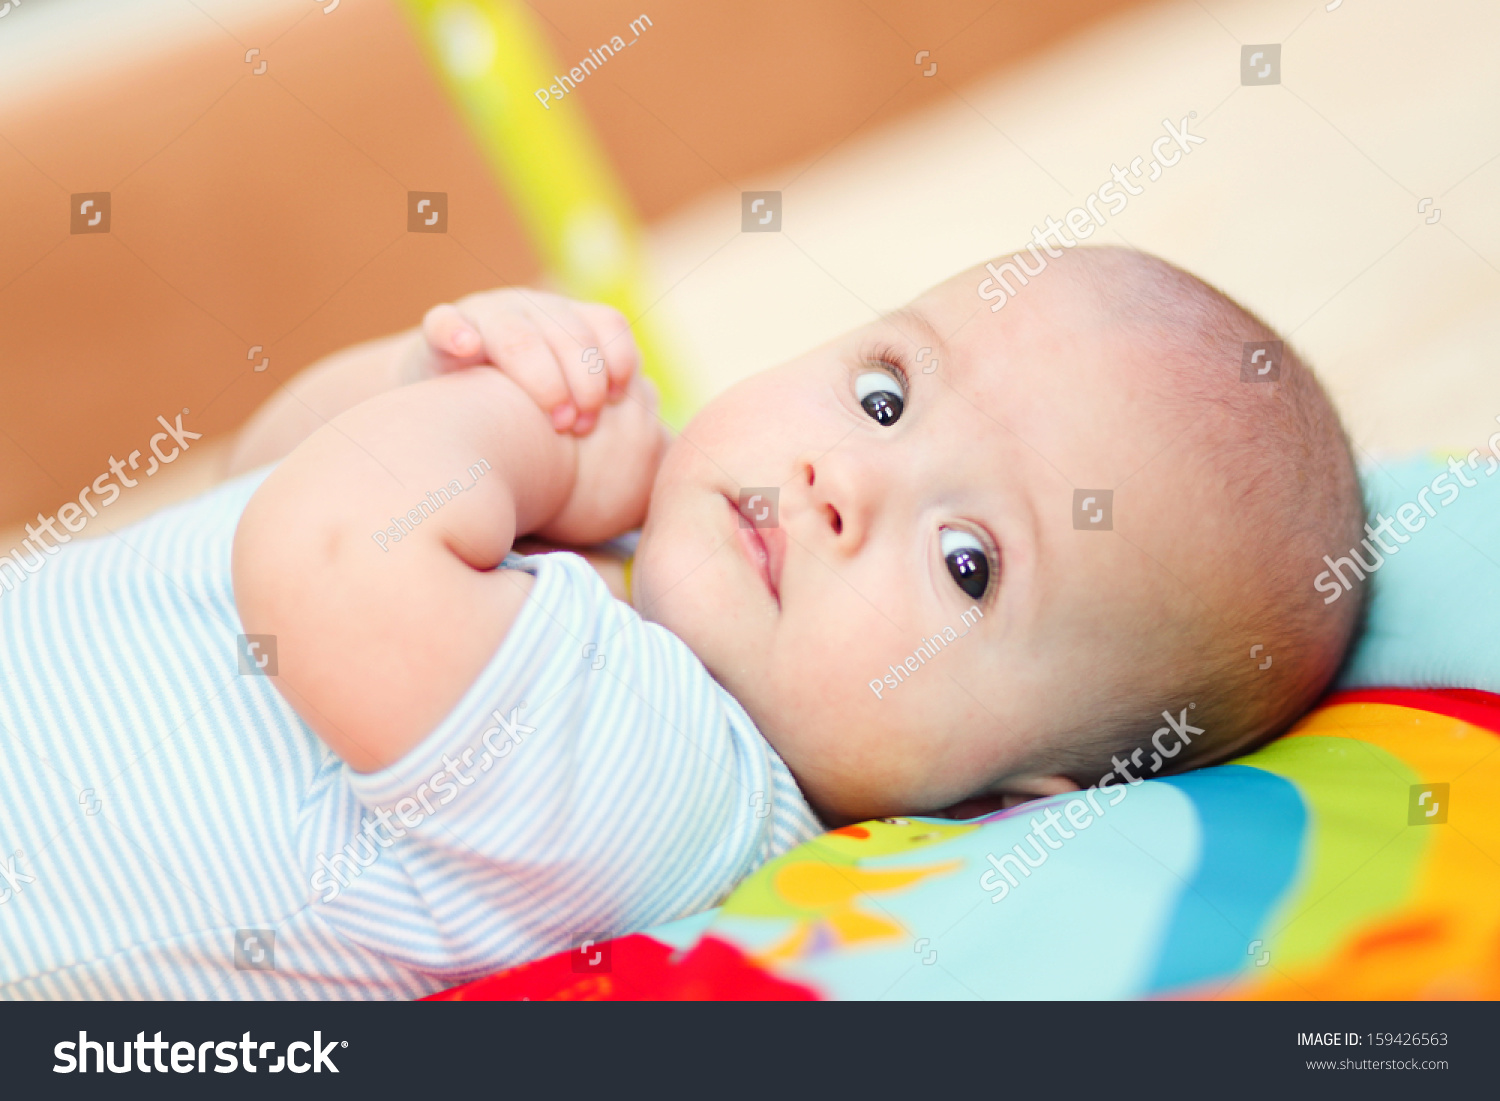 фото ребенка в 1 месяц жизни